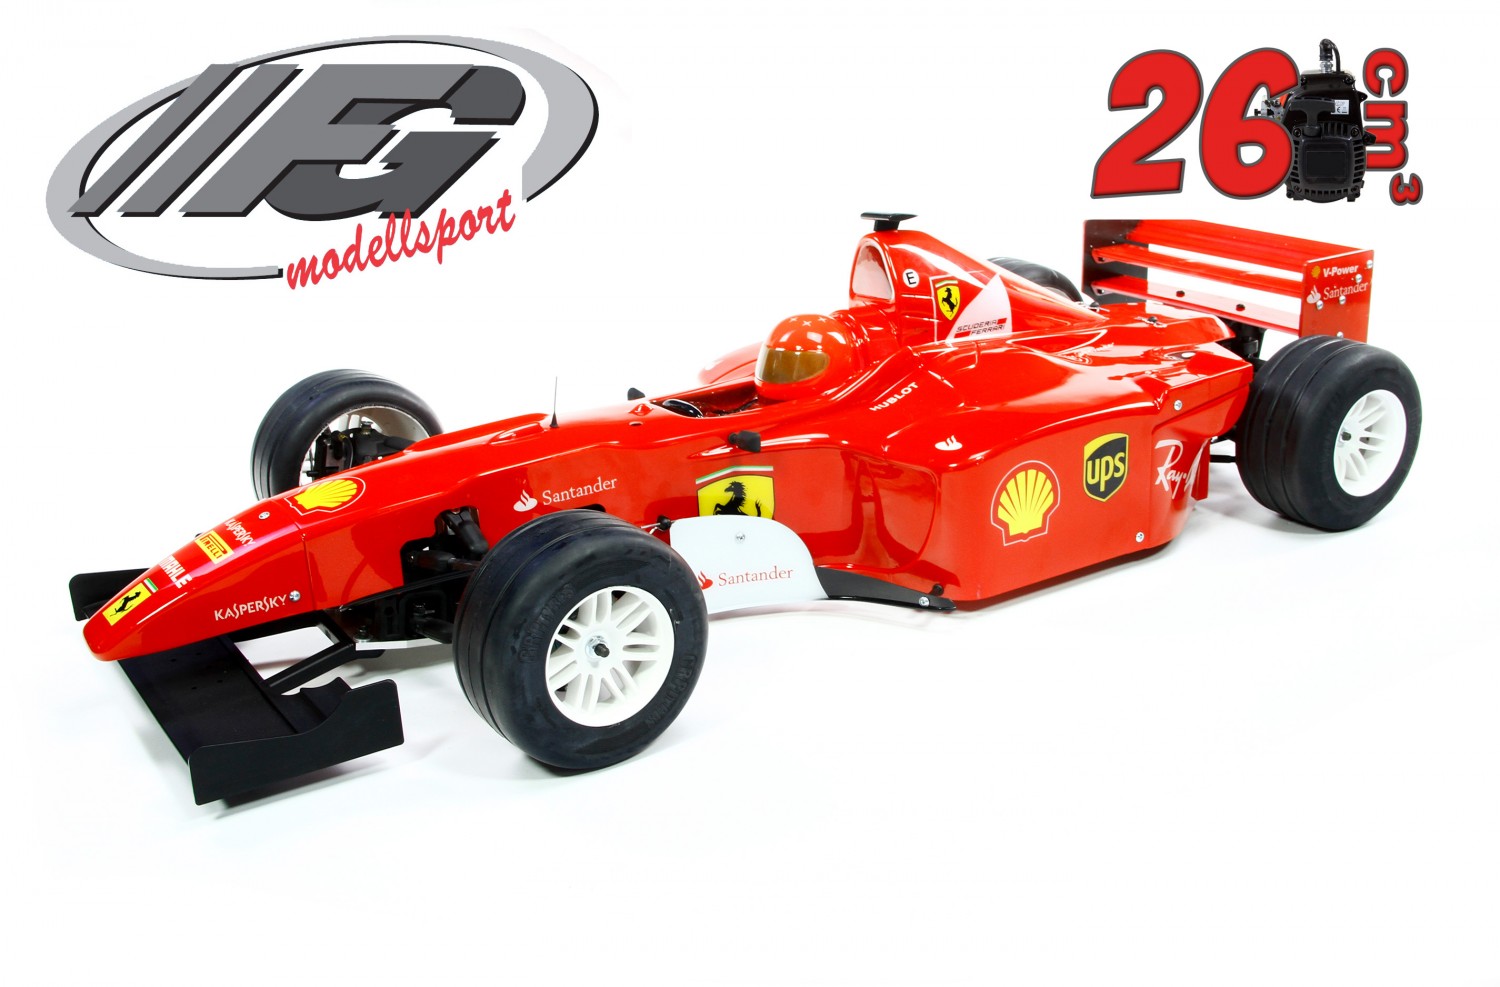 FG Formel 1 Sportsline - RC-Car Formula 1 F1 | eBay